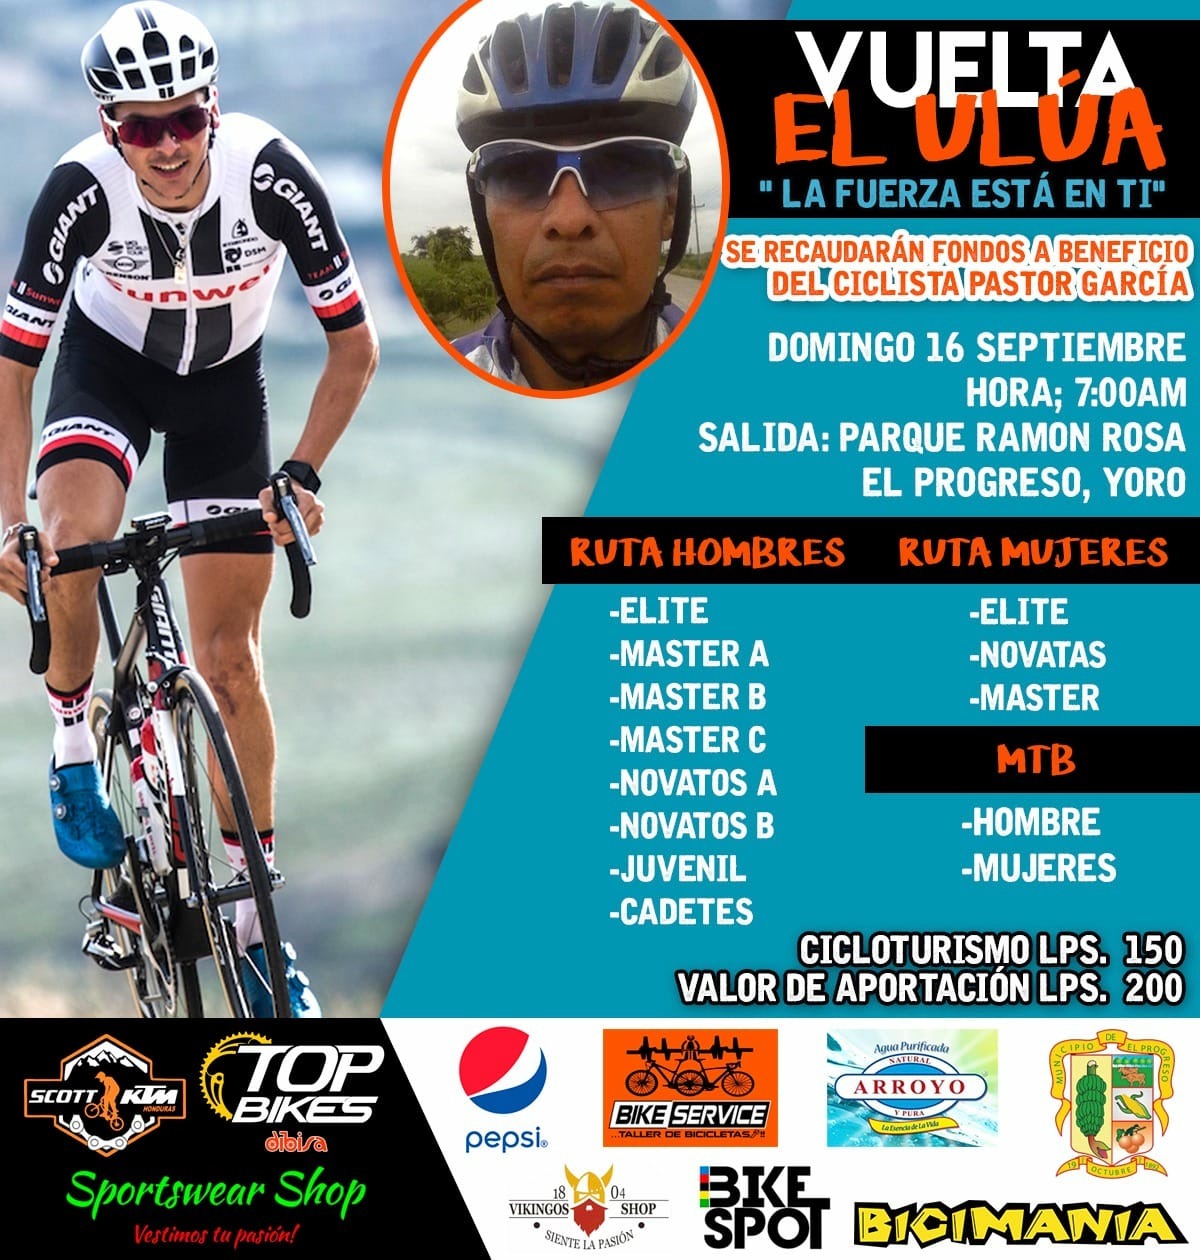 "Vuelta El Ulúa" en apoyo al ciclista Pastor Gómez, atropellada esta semana